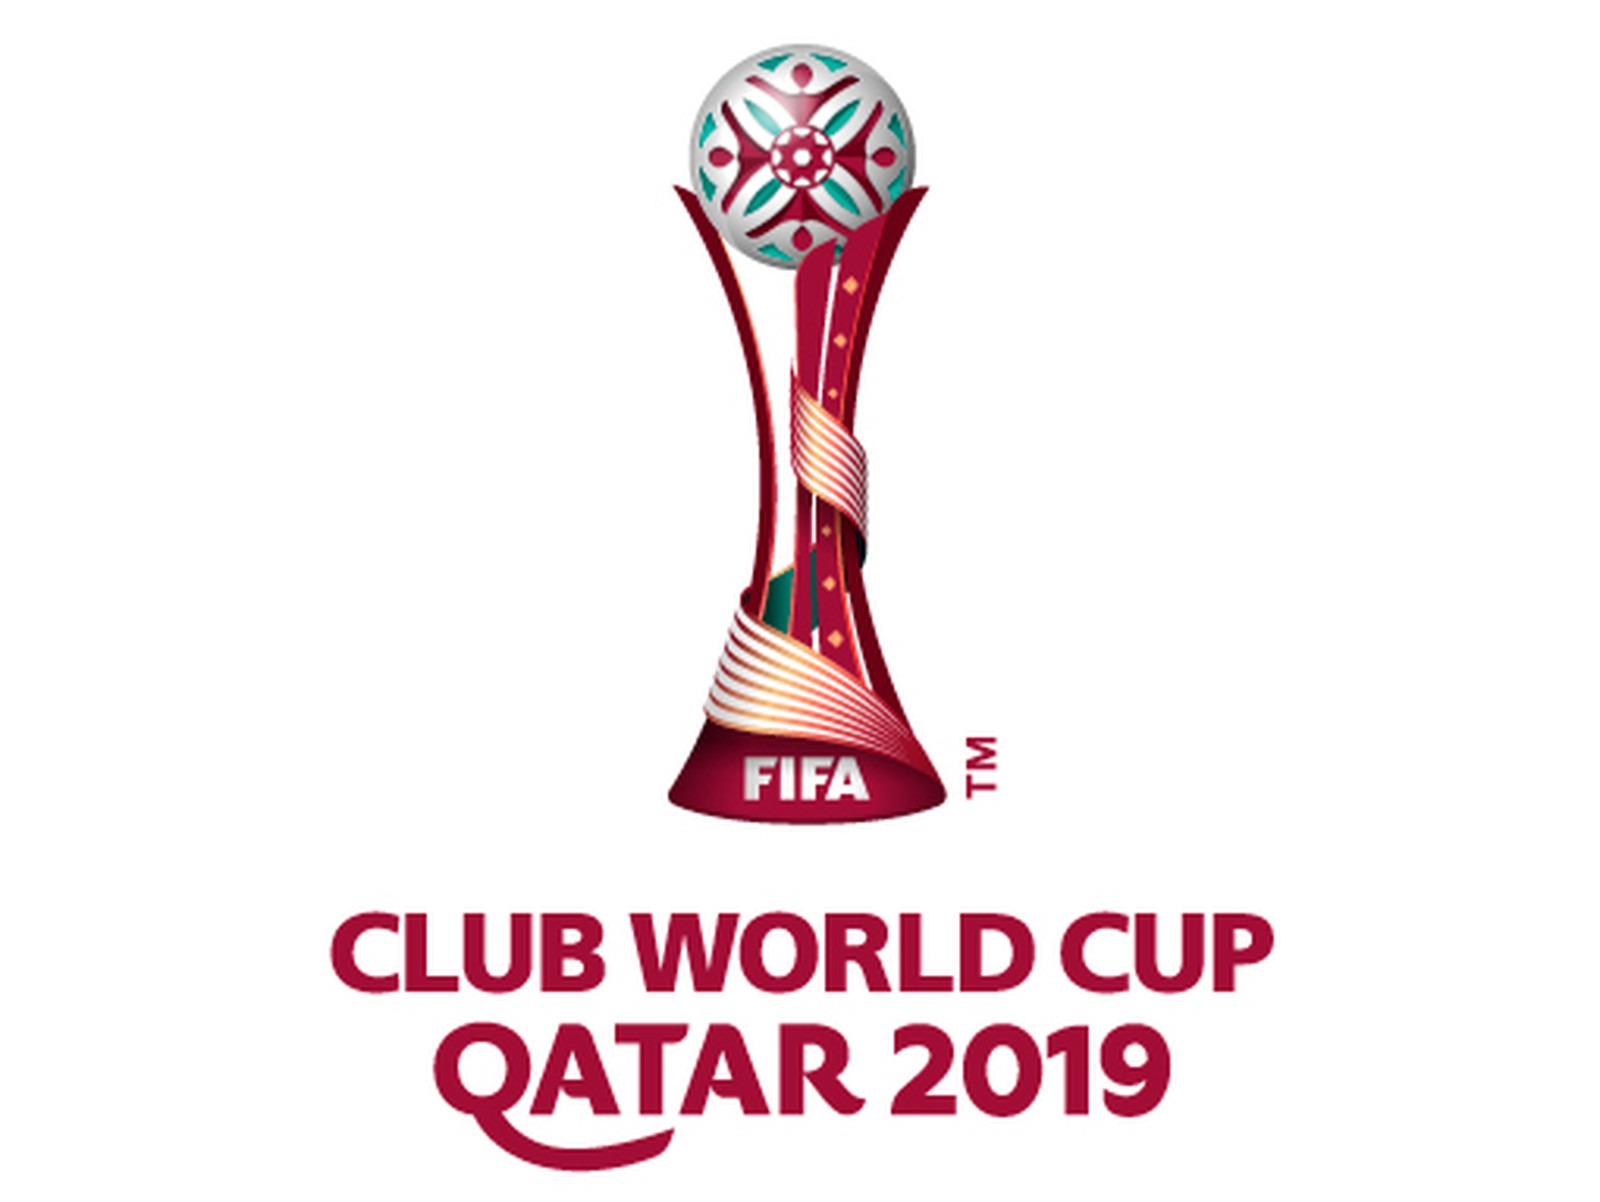 Fifa lança emblema do Mundial de Clubes de 2019 e anuncia para terça início da venda de ingressos